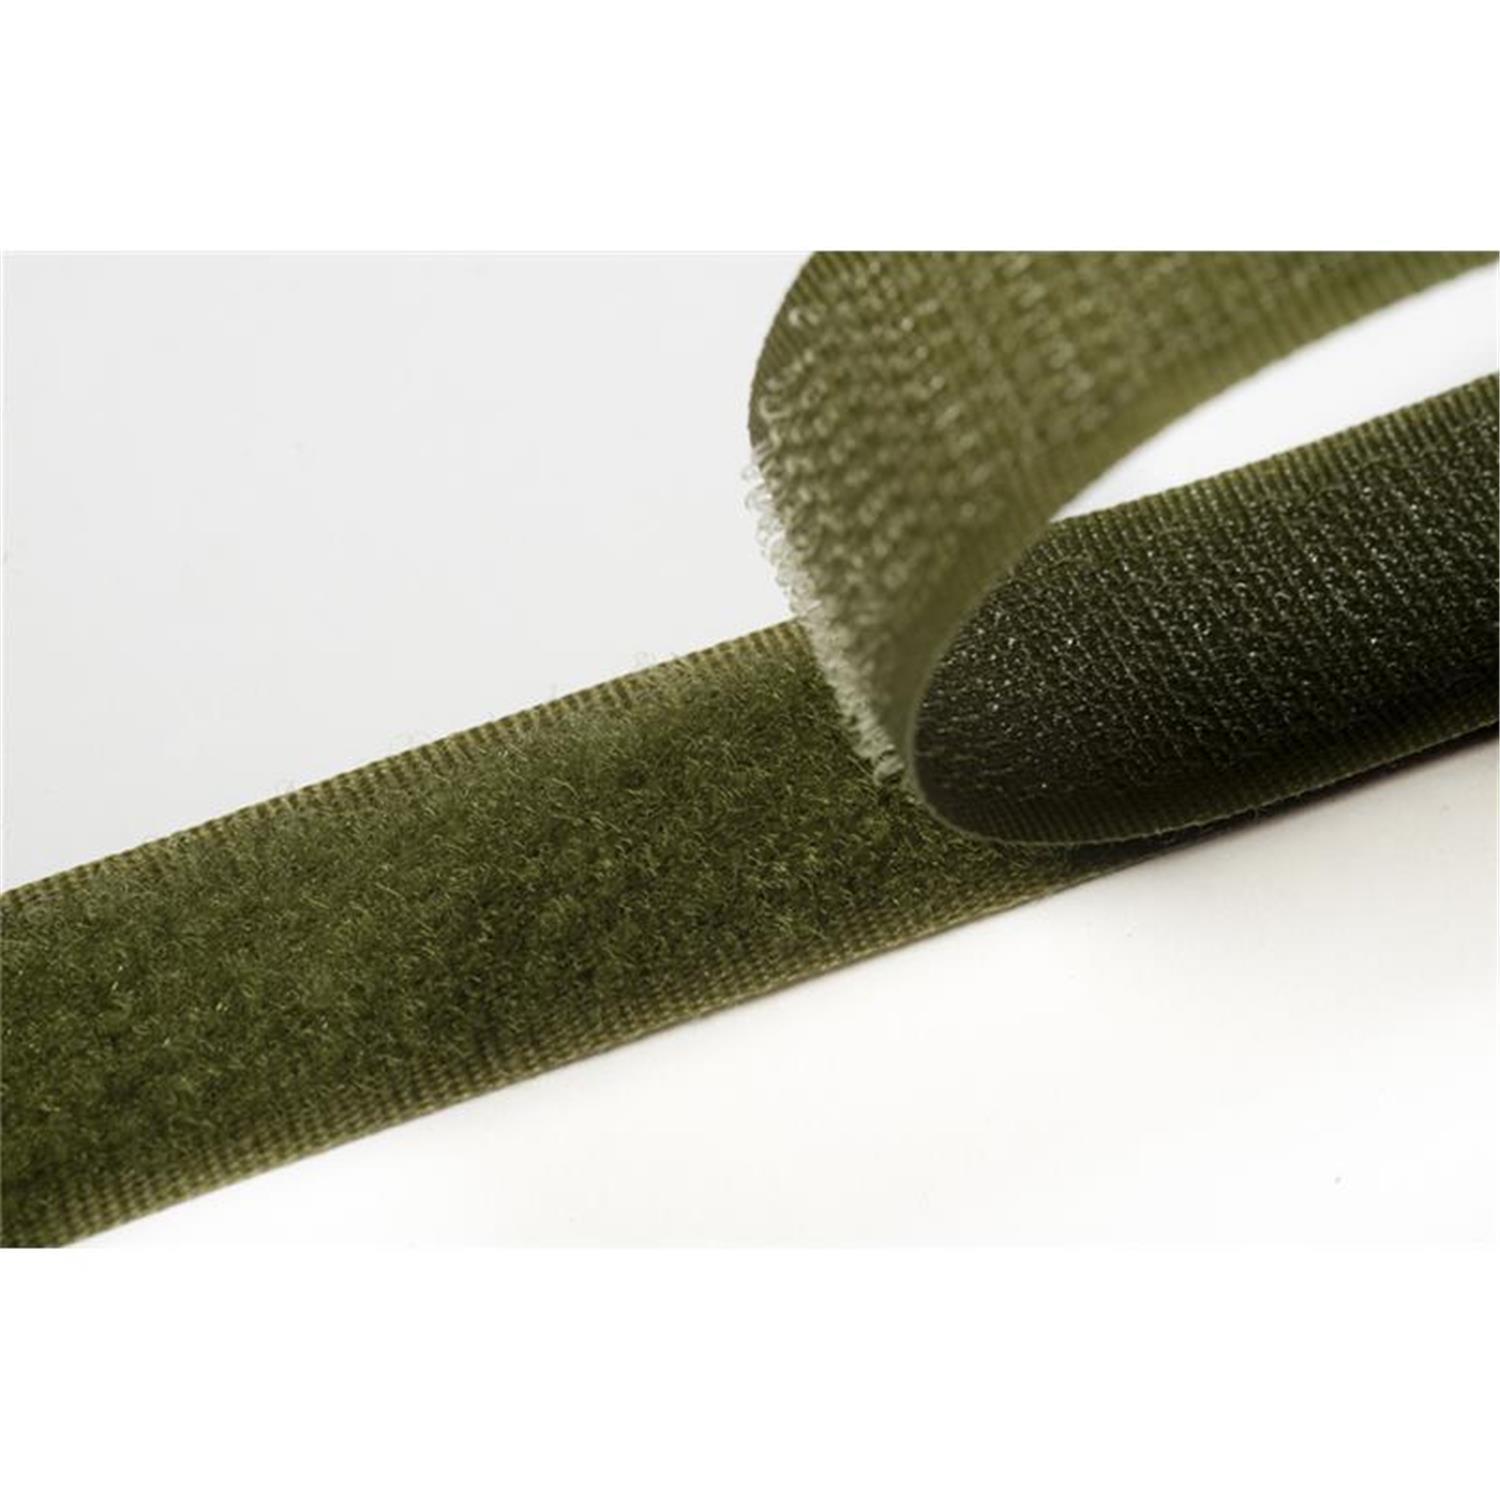 Klettband zum aufnähen, 50 mm, olivgrün #09 25 Meter